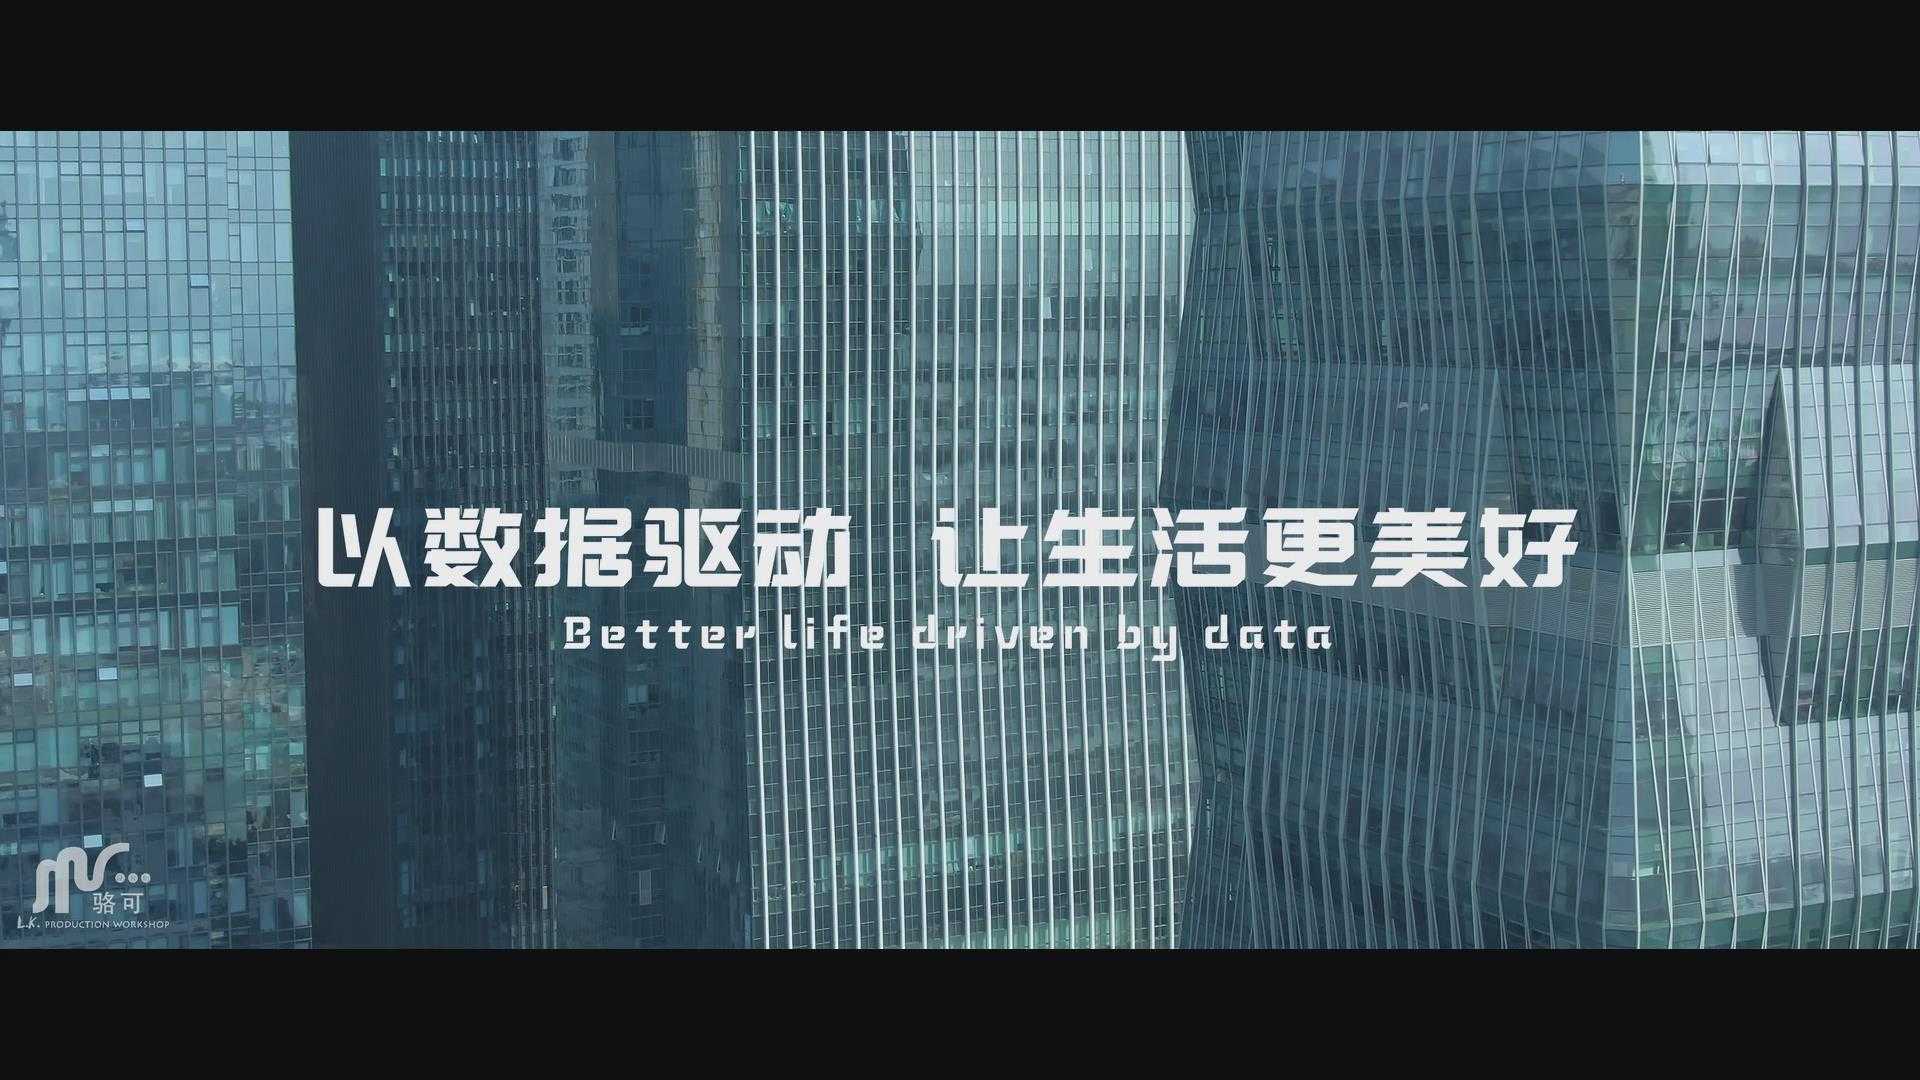 佰模伝-BIM技术企业形象宣传片